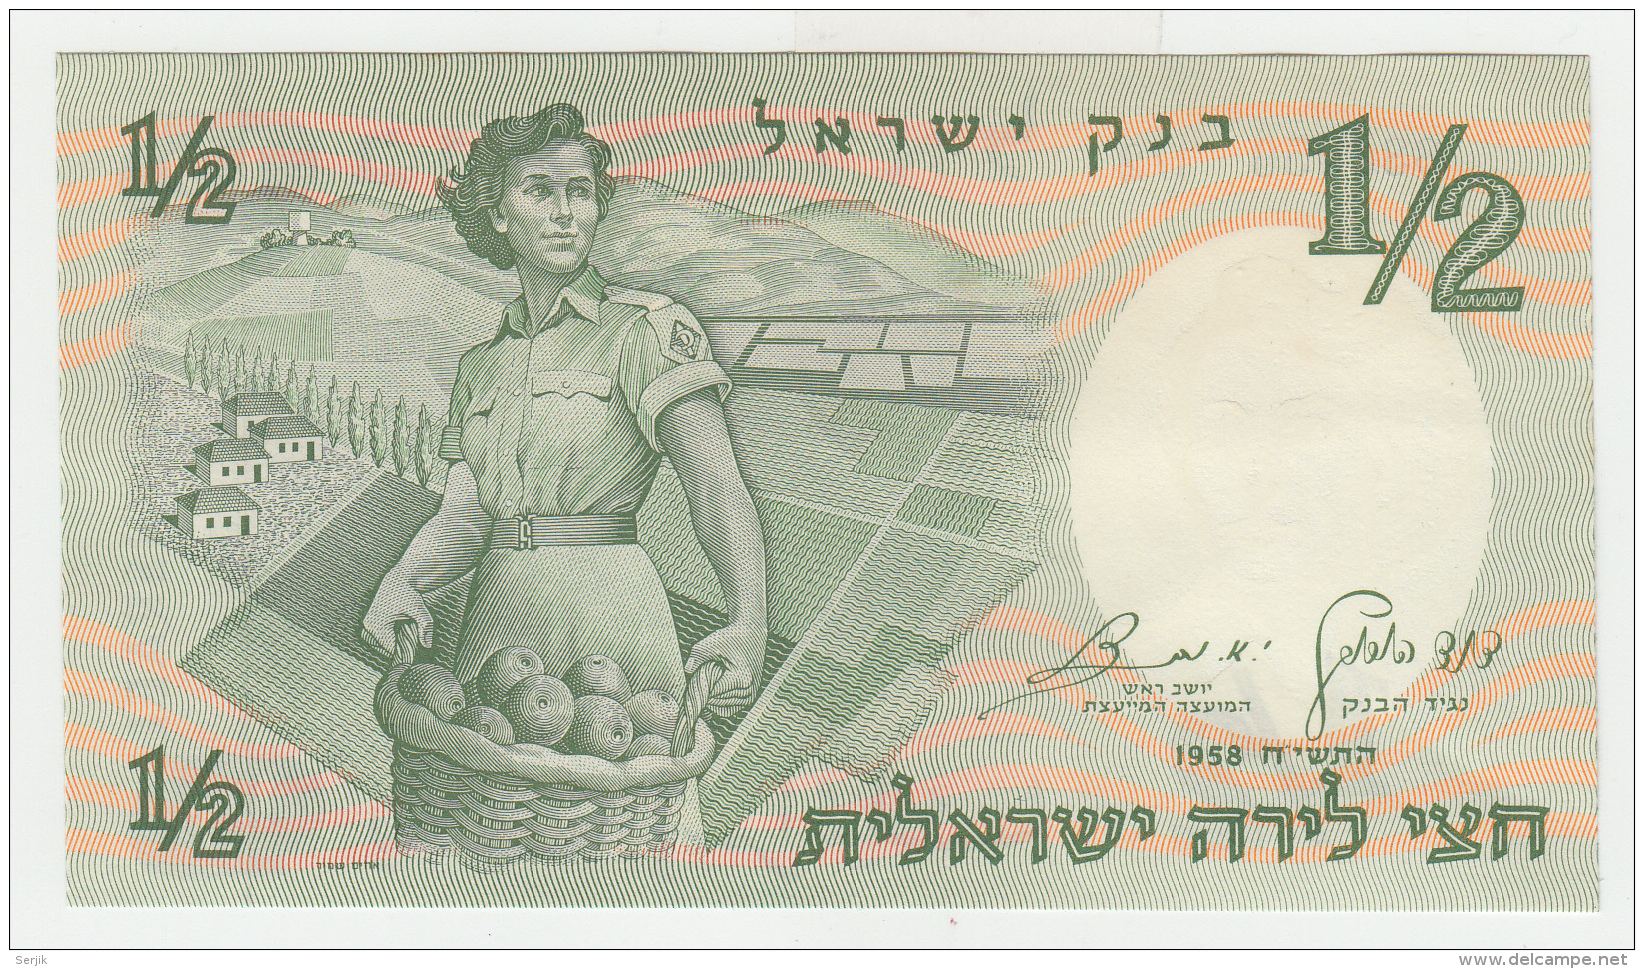 ISRAEL 1/2 LIRA 1958 UNC NEUF Pick 29 - Israele